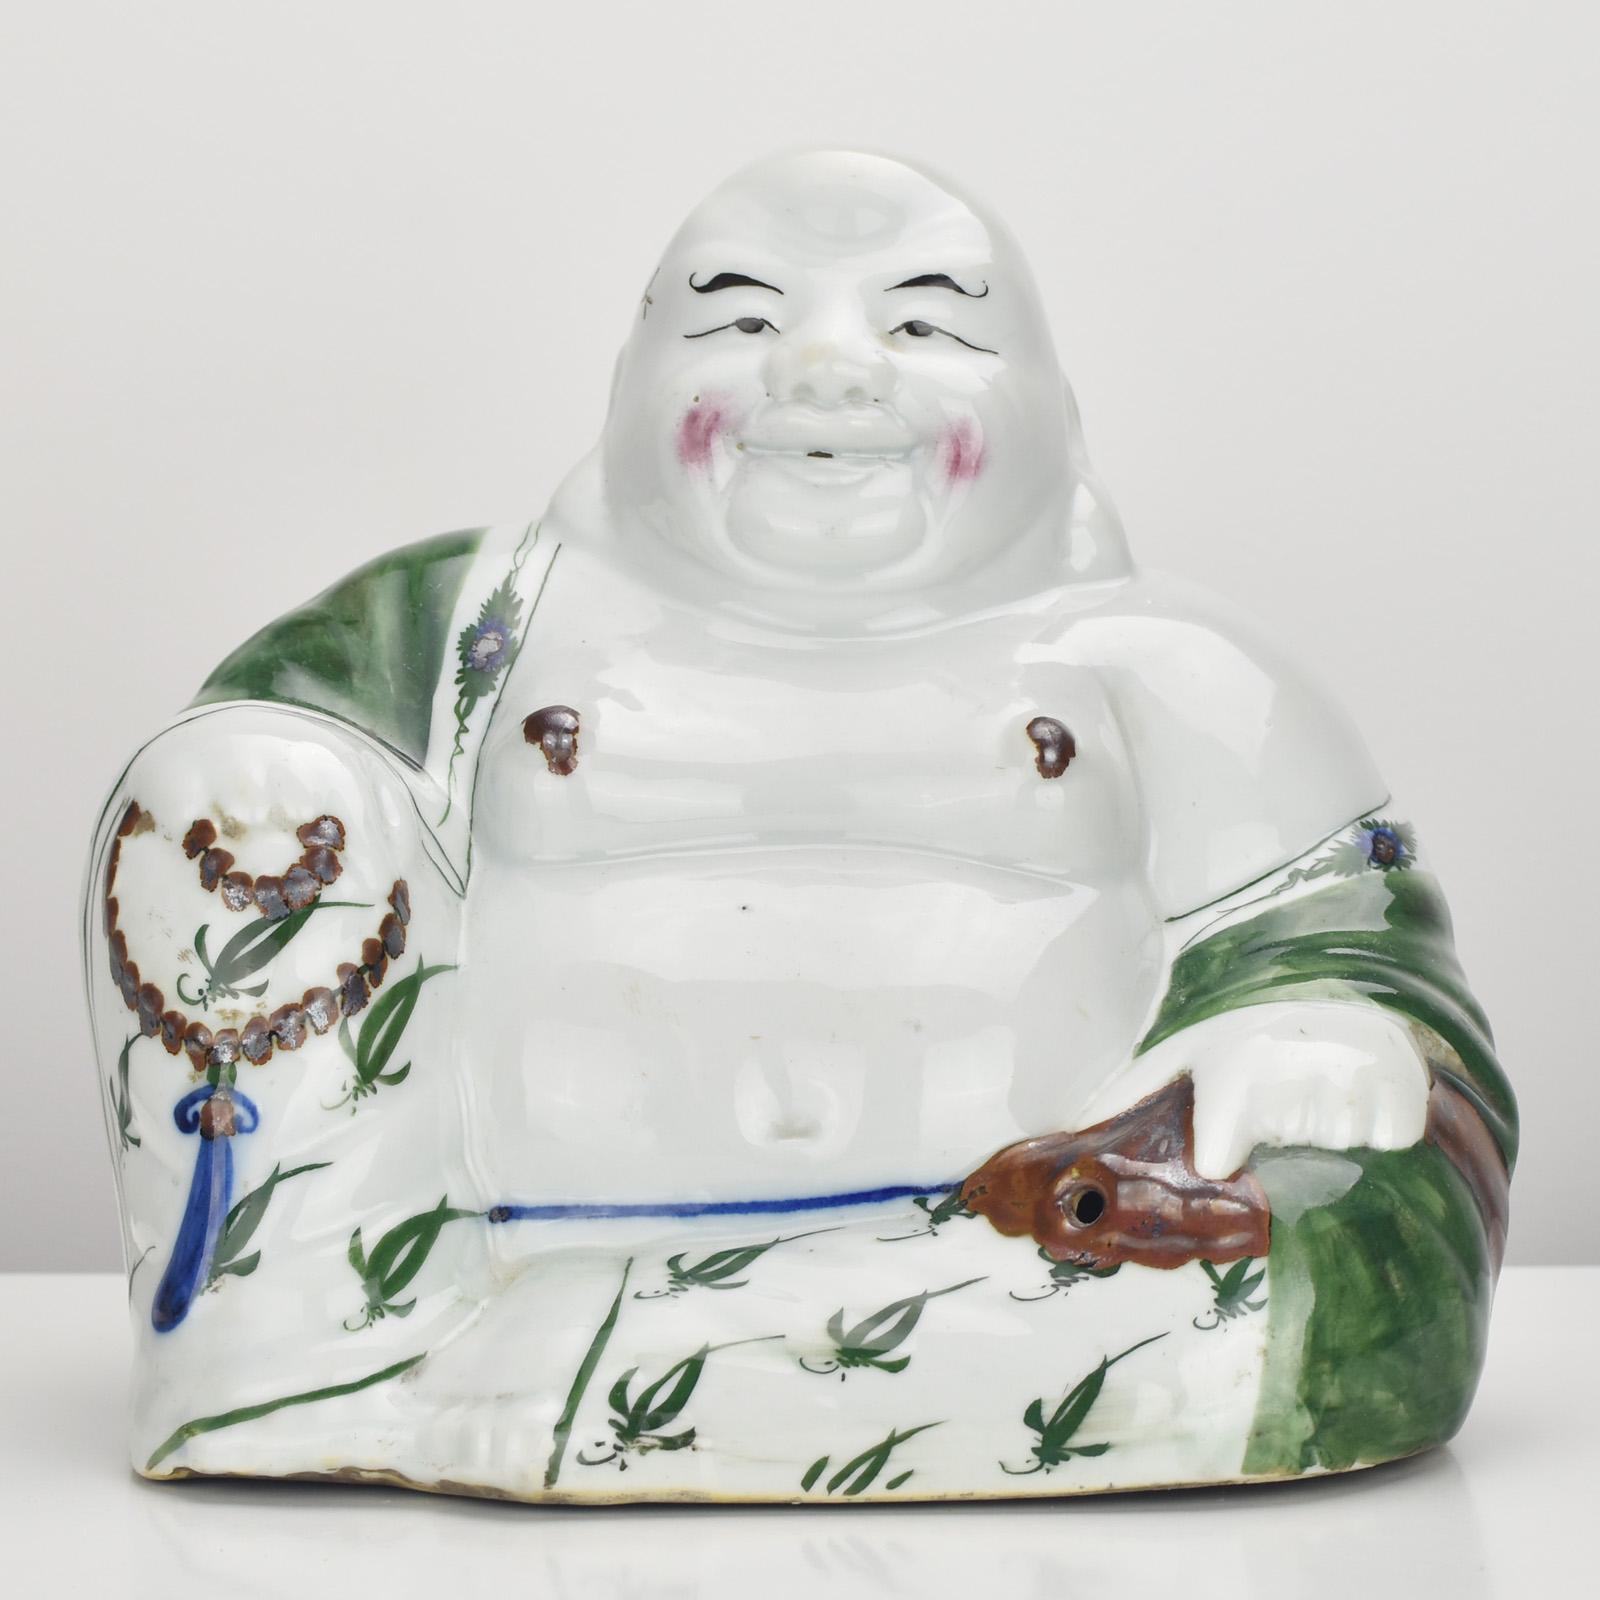 Der ungewöhnliche antike ca. 1920 Der lachende Buddha aus chinesischem Qing-Porzellan ist ein bemerkenswertes und exquisites Kunstwerk, das Charme und kulturelle Bedeutung ausstrahlt. Die Statue zeigt den ikonischen Lachenden Buddha, auch bekannt